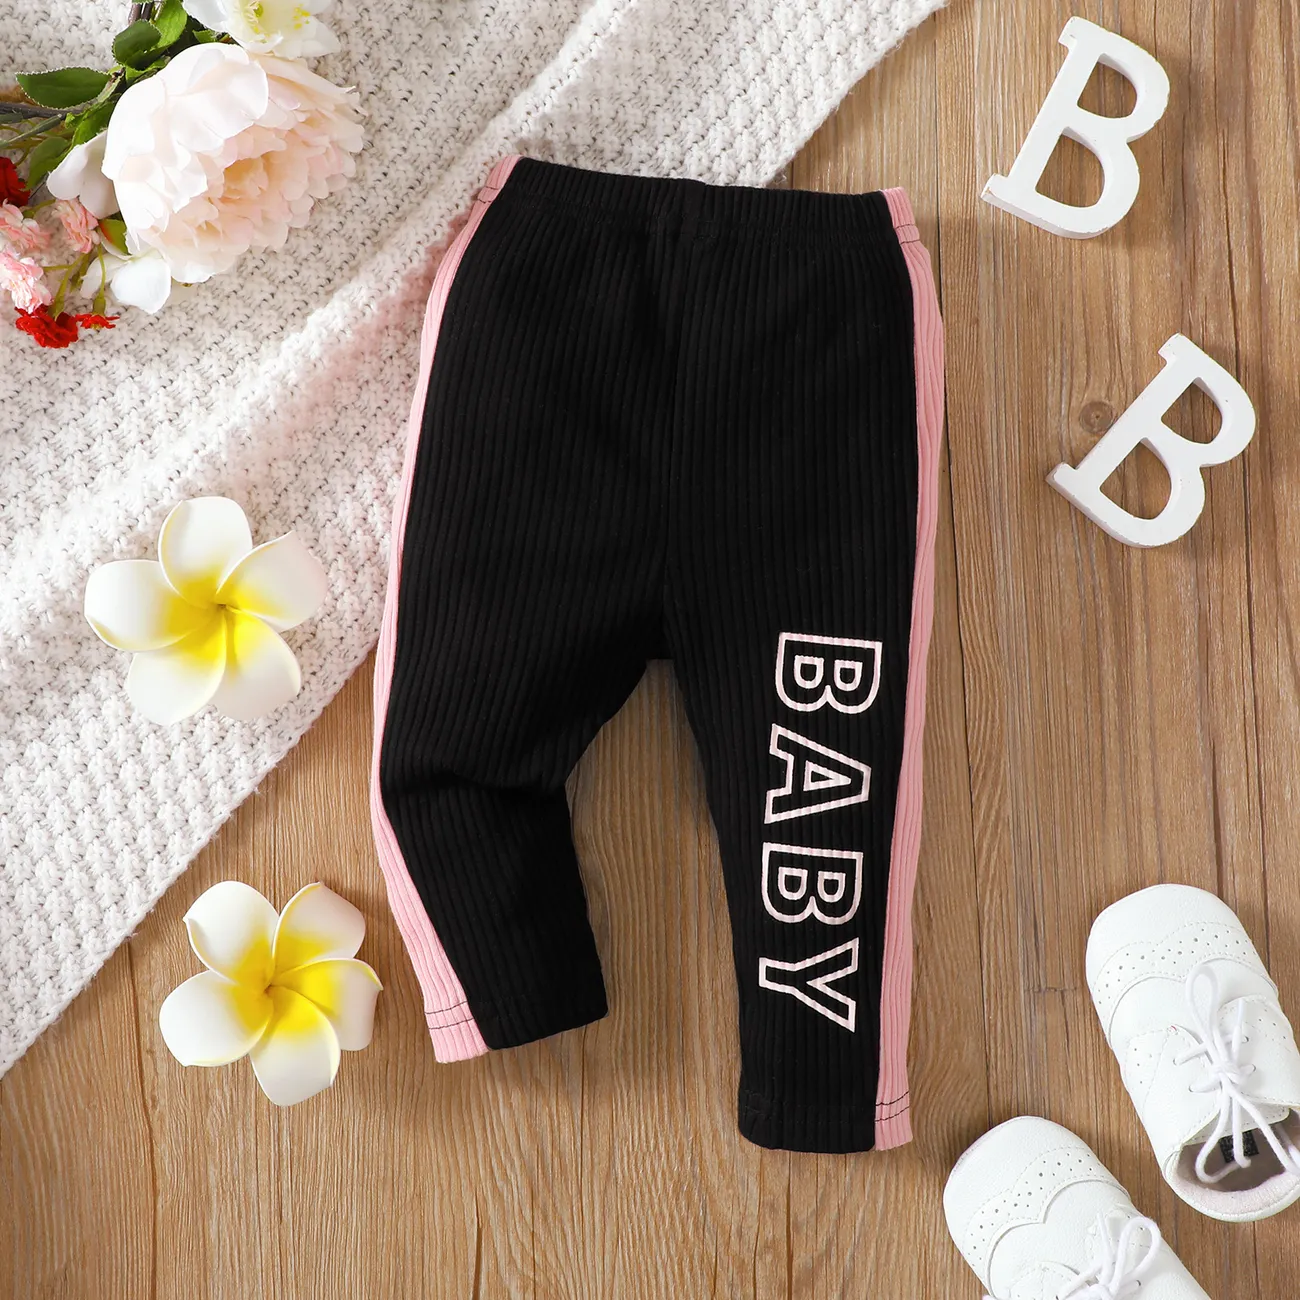 
Baby Girl Color Block Design Casual Letter  Legging Black big image 1